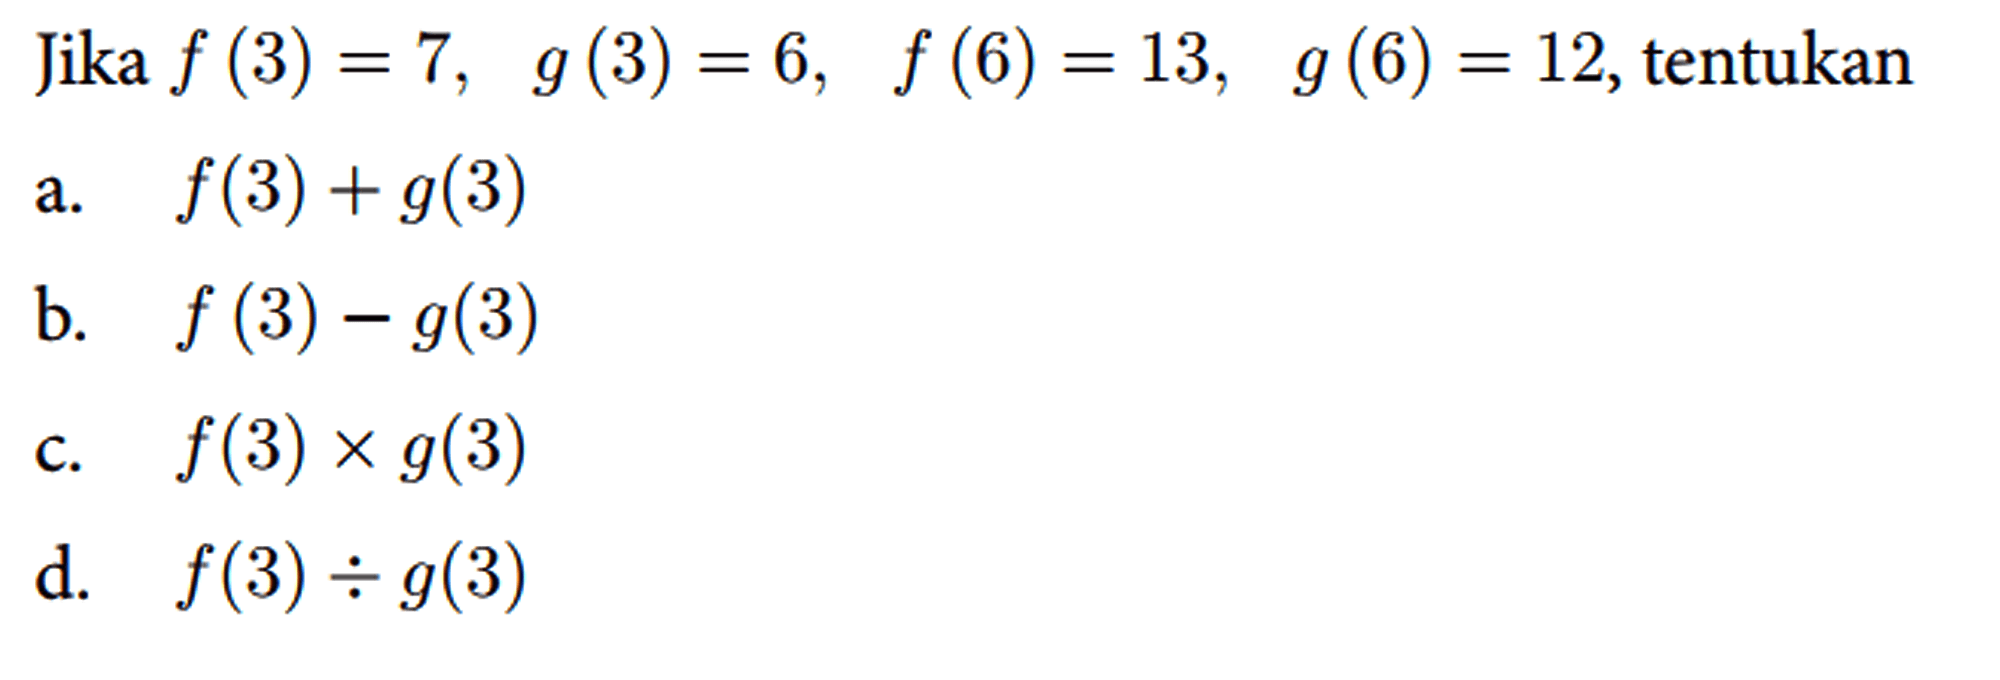 Jika f(3)=7, g(3)=6, f(6)=13, g(6)=12 , tentukan
 a. f(3)+g(3) 
 b. f(3)-g(3) 
 c. f(3) x g(3) 
 d. f(3) / g(3)